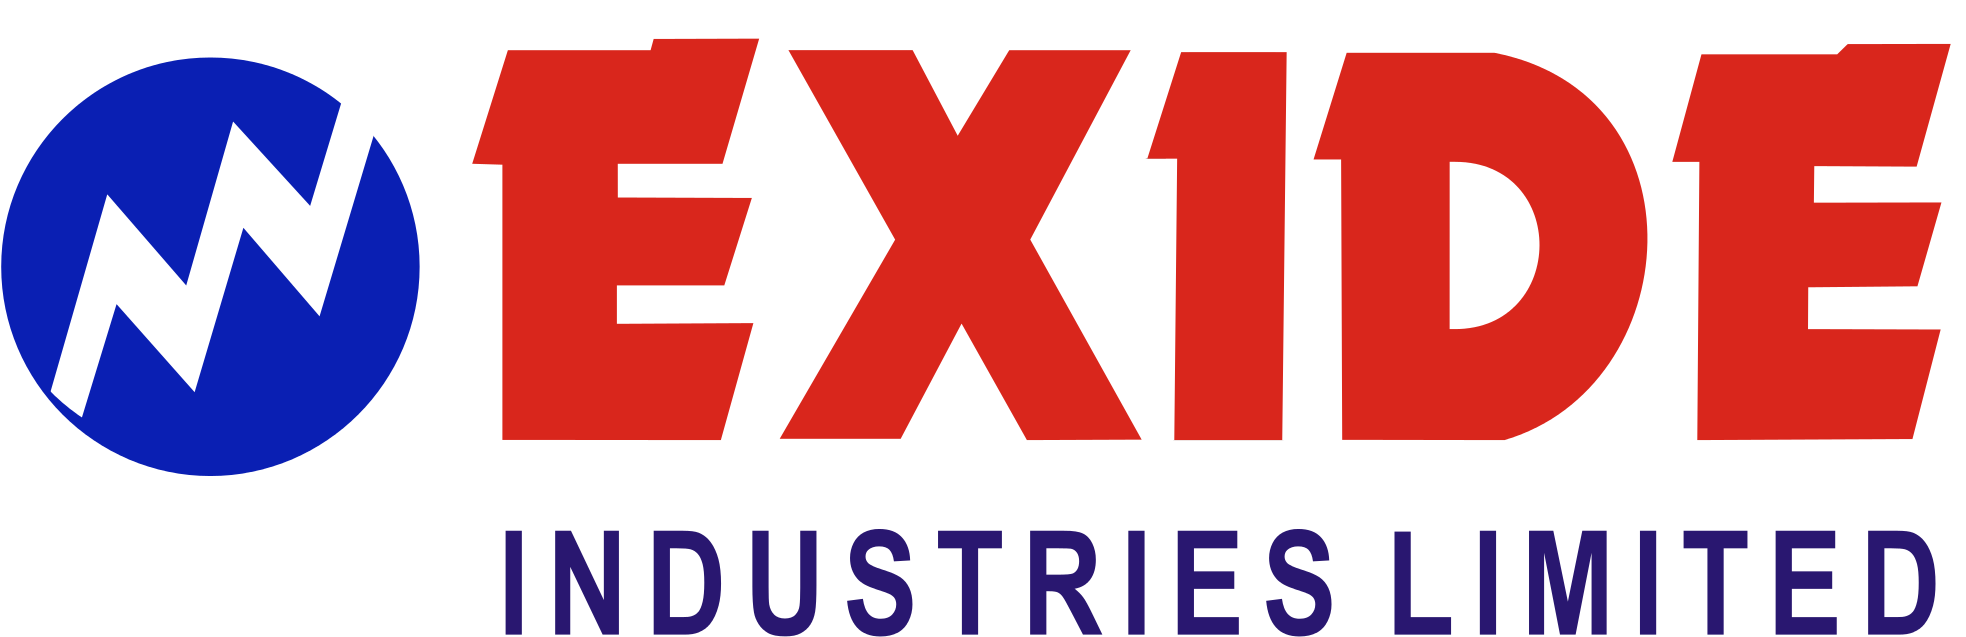 Exide Logo - Exide Battery Logo Png Clipart (2000x643), Png Download